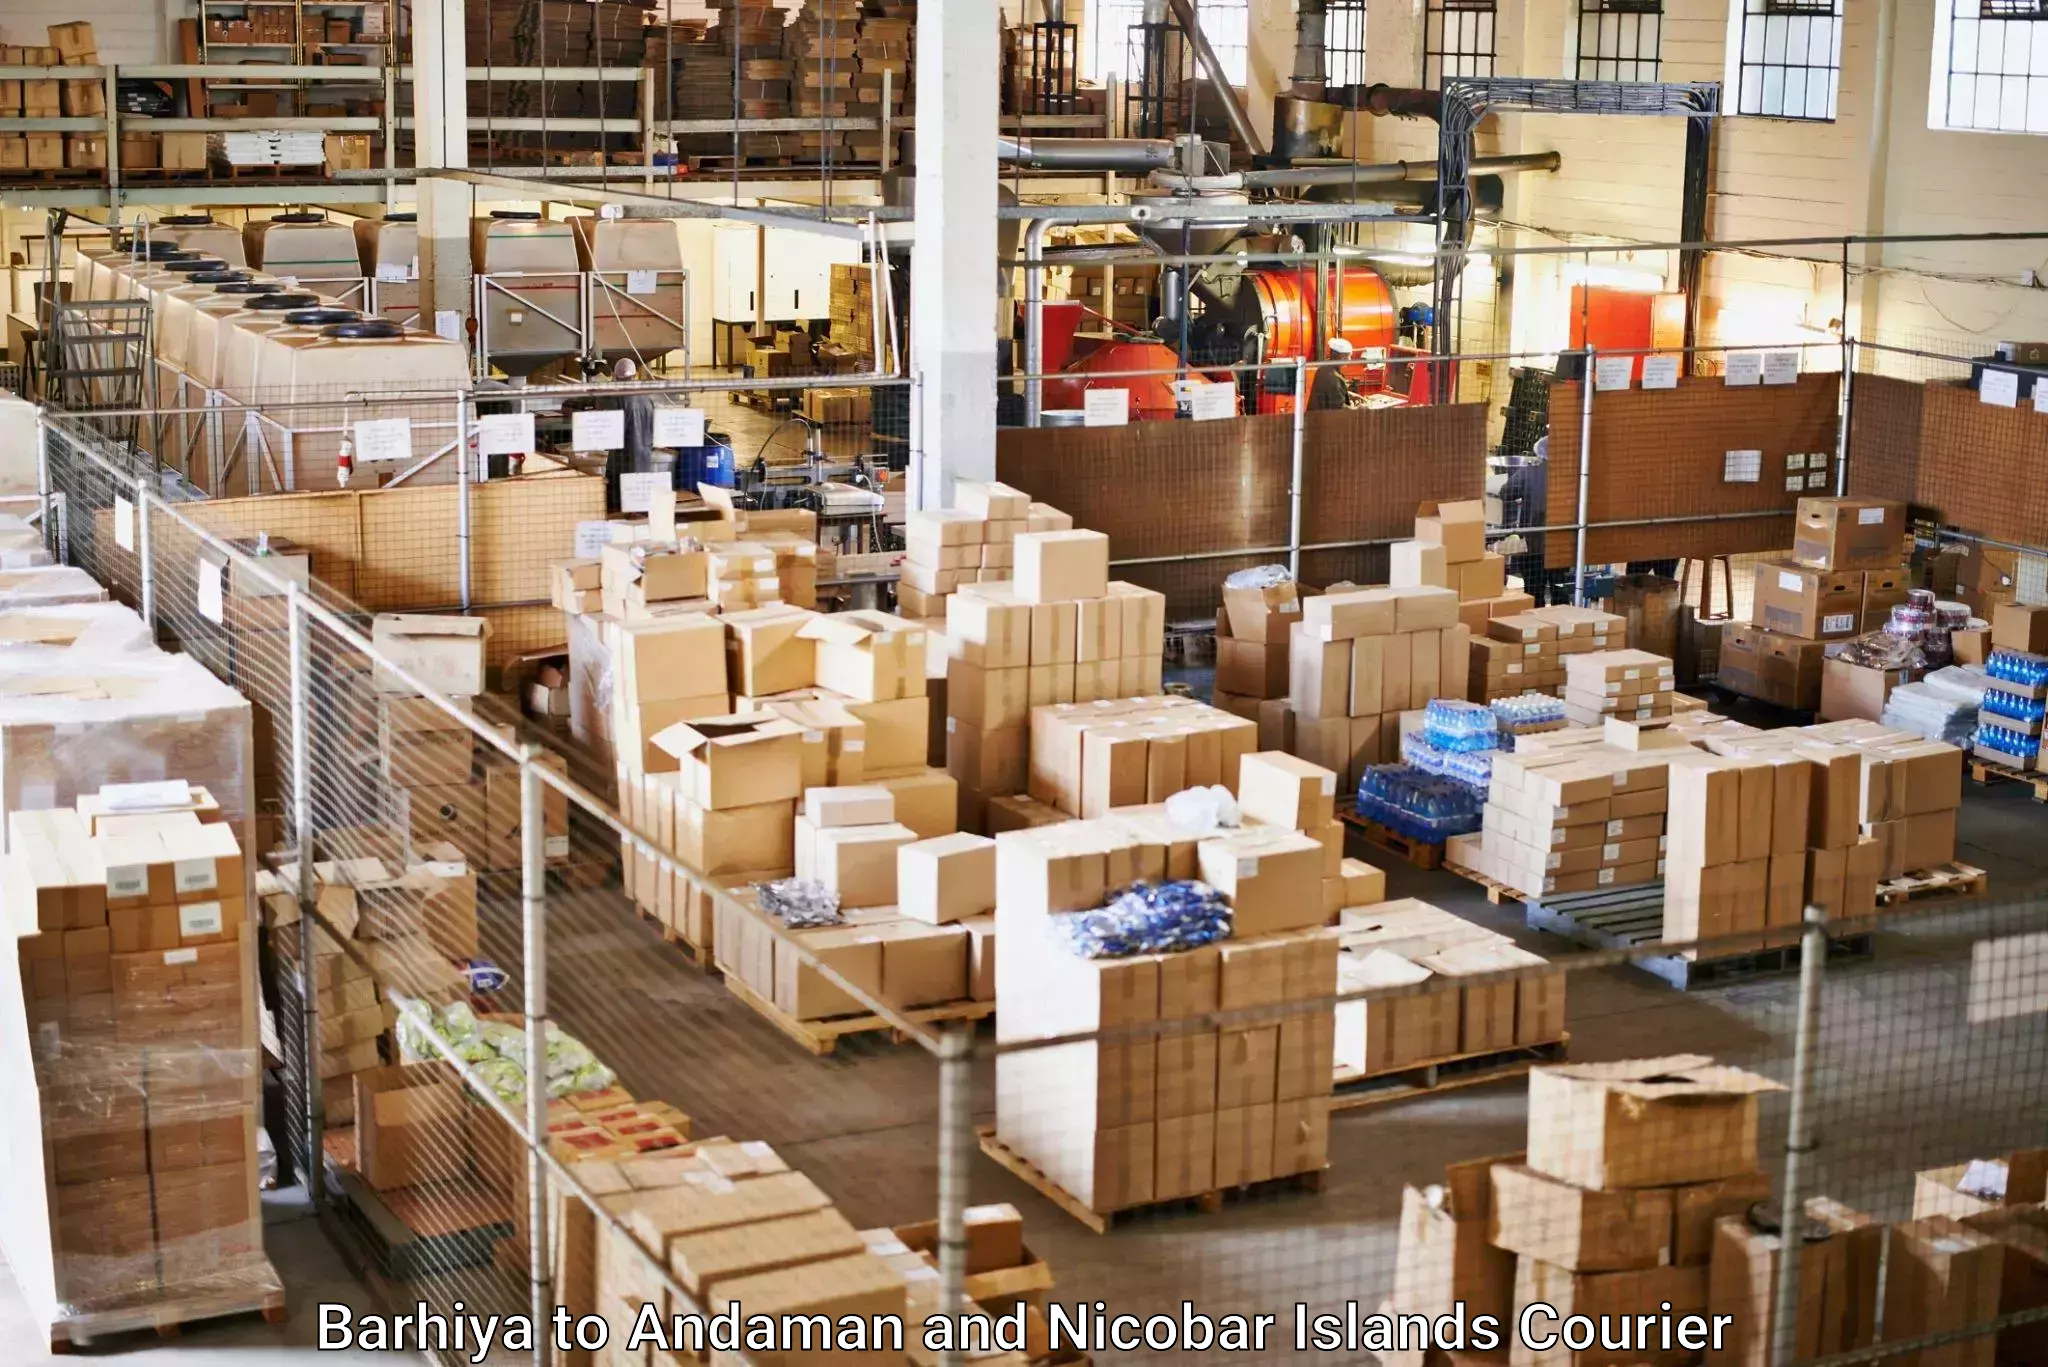 High-capacity parcel service Barhiya to Andaman and Nicobar Islands